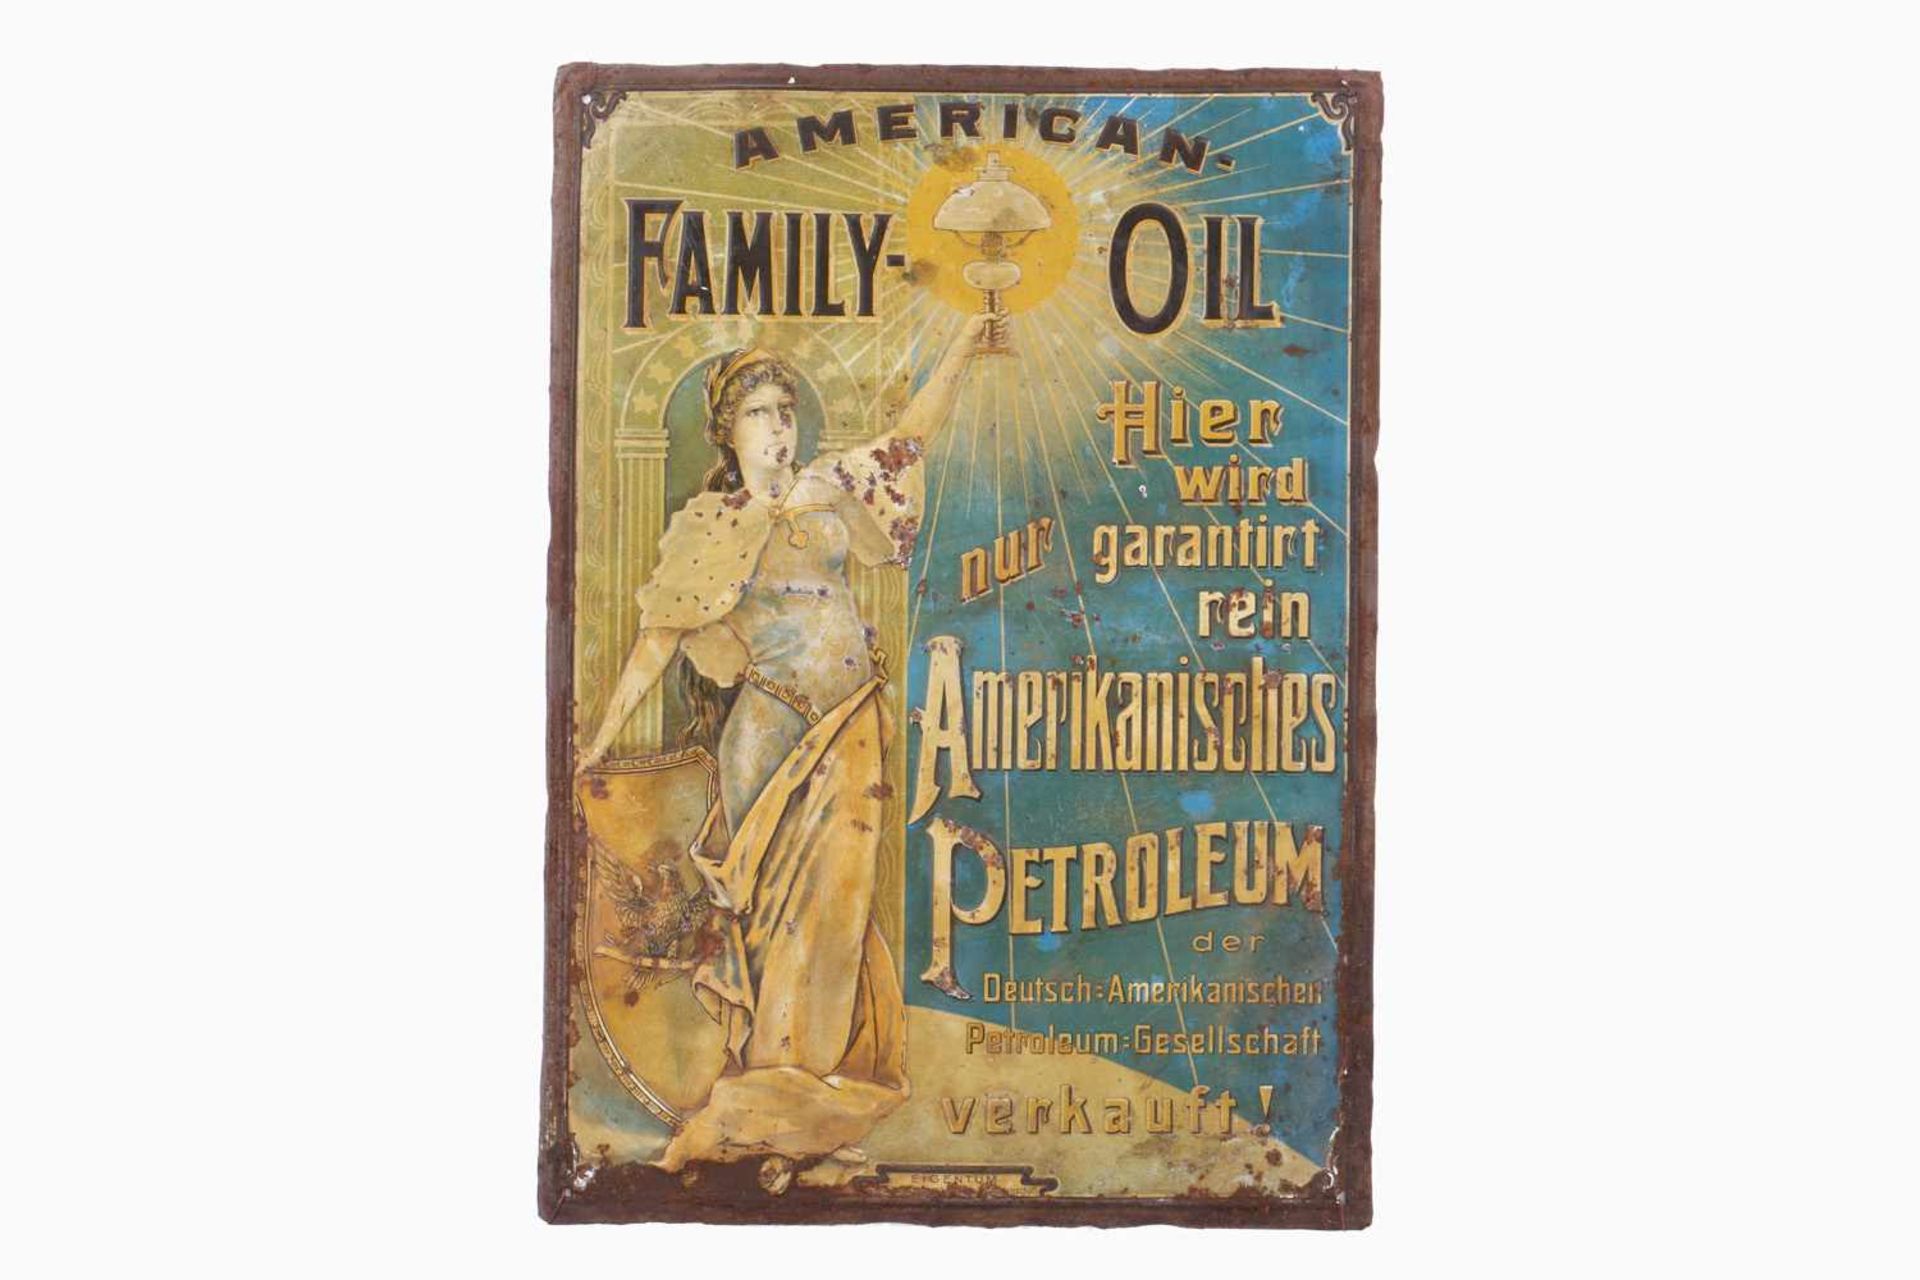 Frühes Dapolin-Werbeblechschild, chromolithografiert, geprägt, Aufschrift "American Family Oil", "